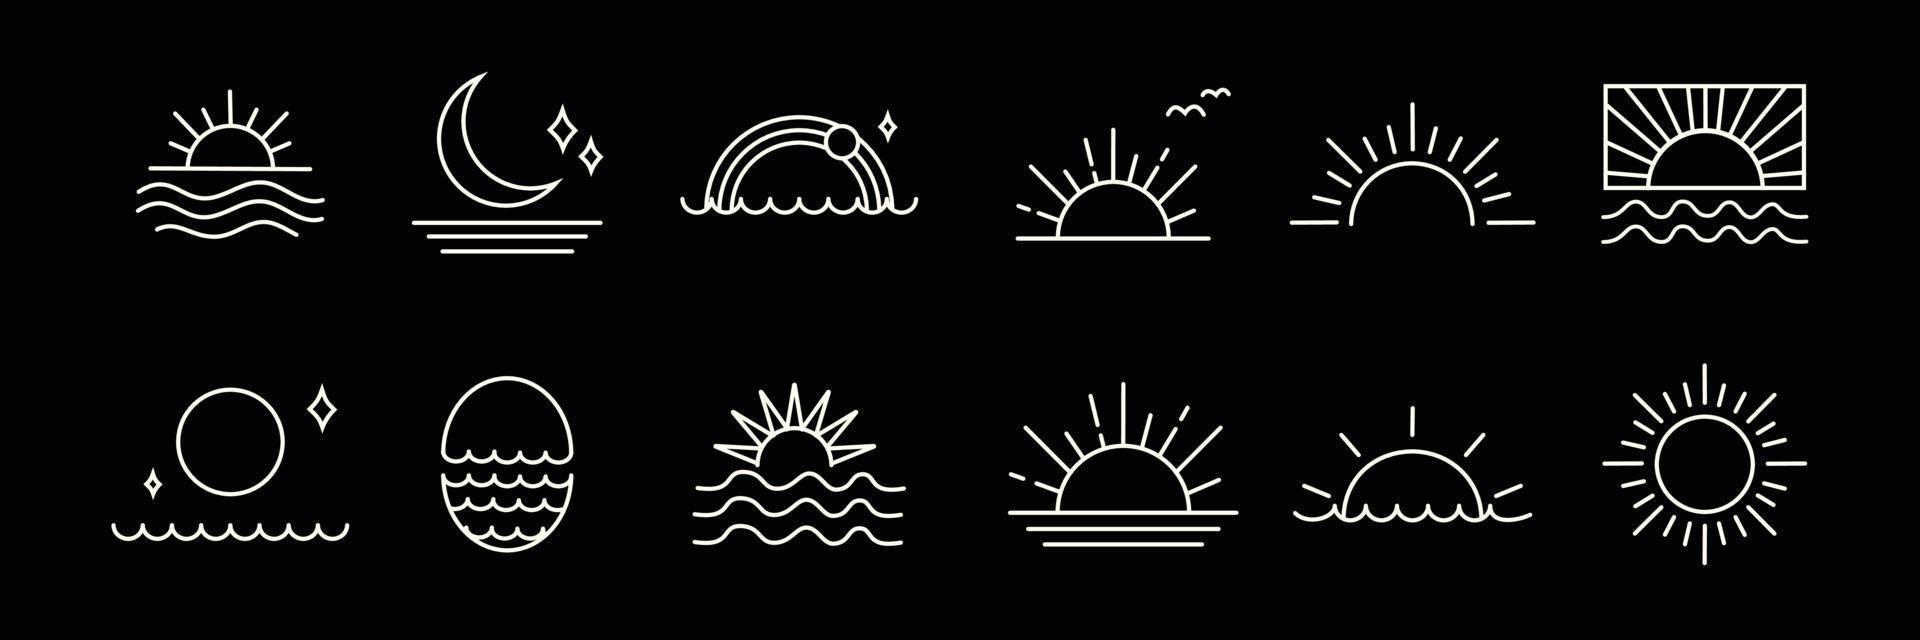 conjunto de recopilación de puesta de sol o amanecer. logotipo de sol en icono y símbolo de estilo boho. ilustración de elemento de vector para la decoración en estilo moderno minimalista. diseño de naturaleza bohemia.